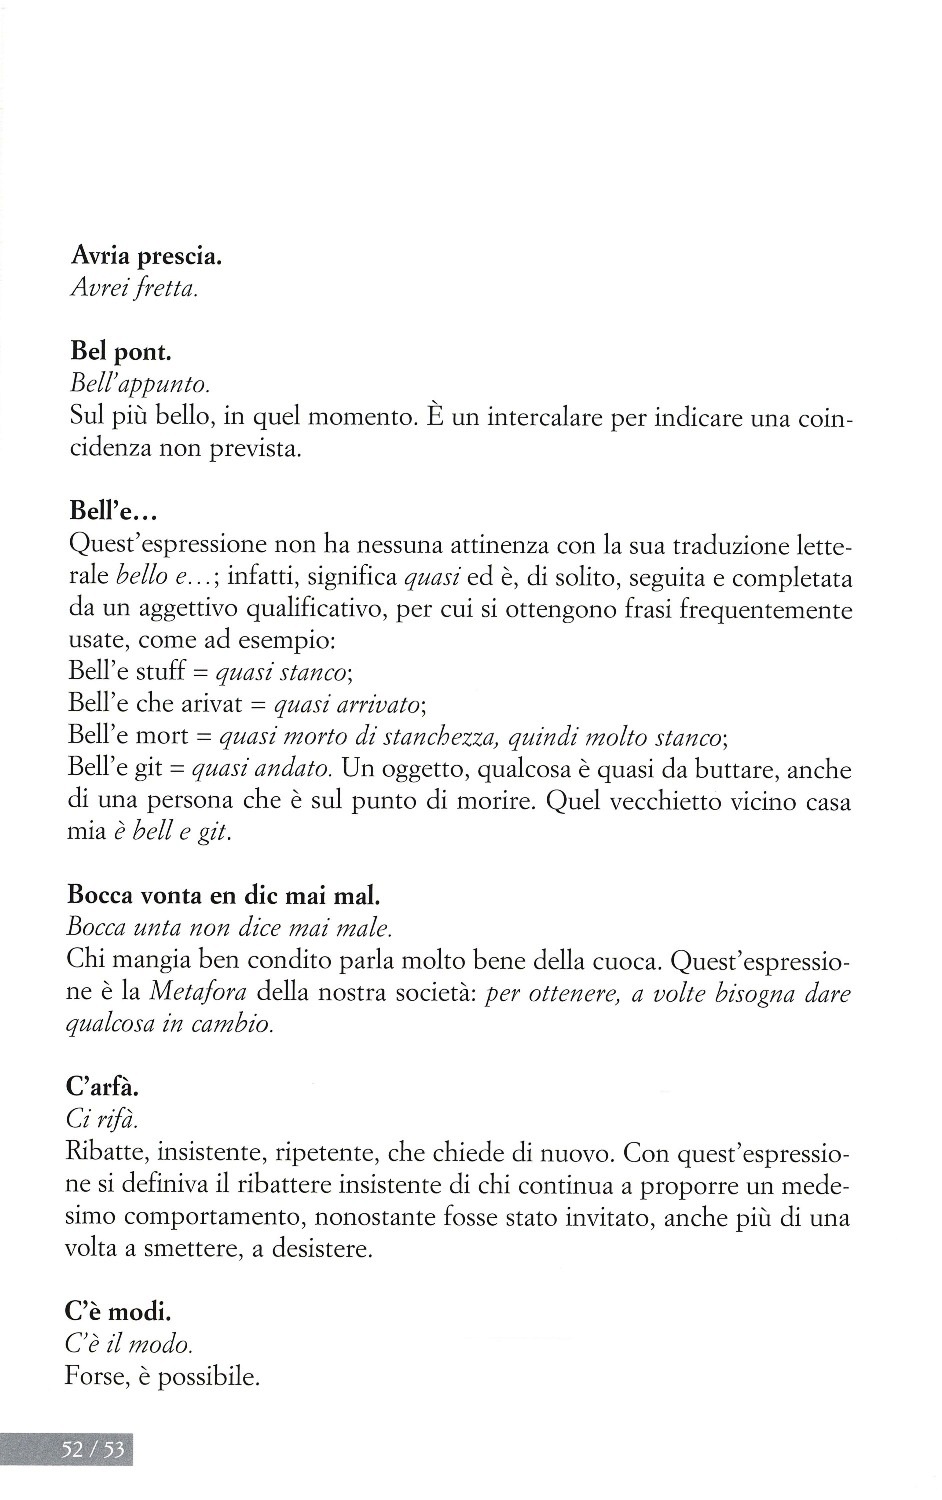 La torr i arduna tutti 2009 p.052